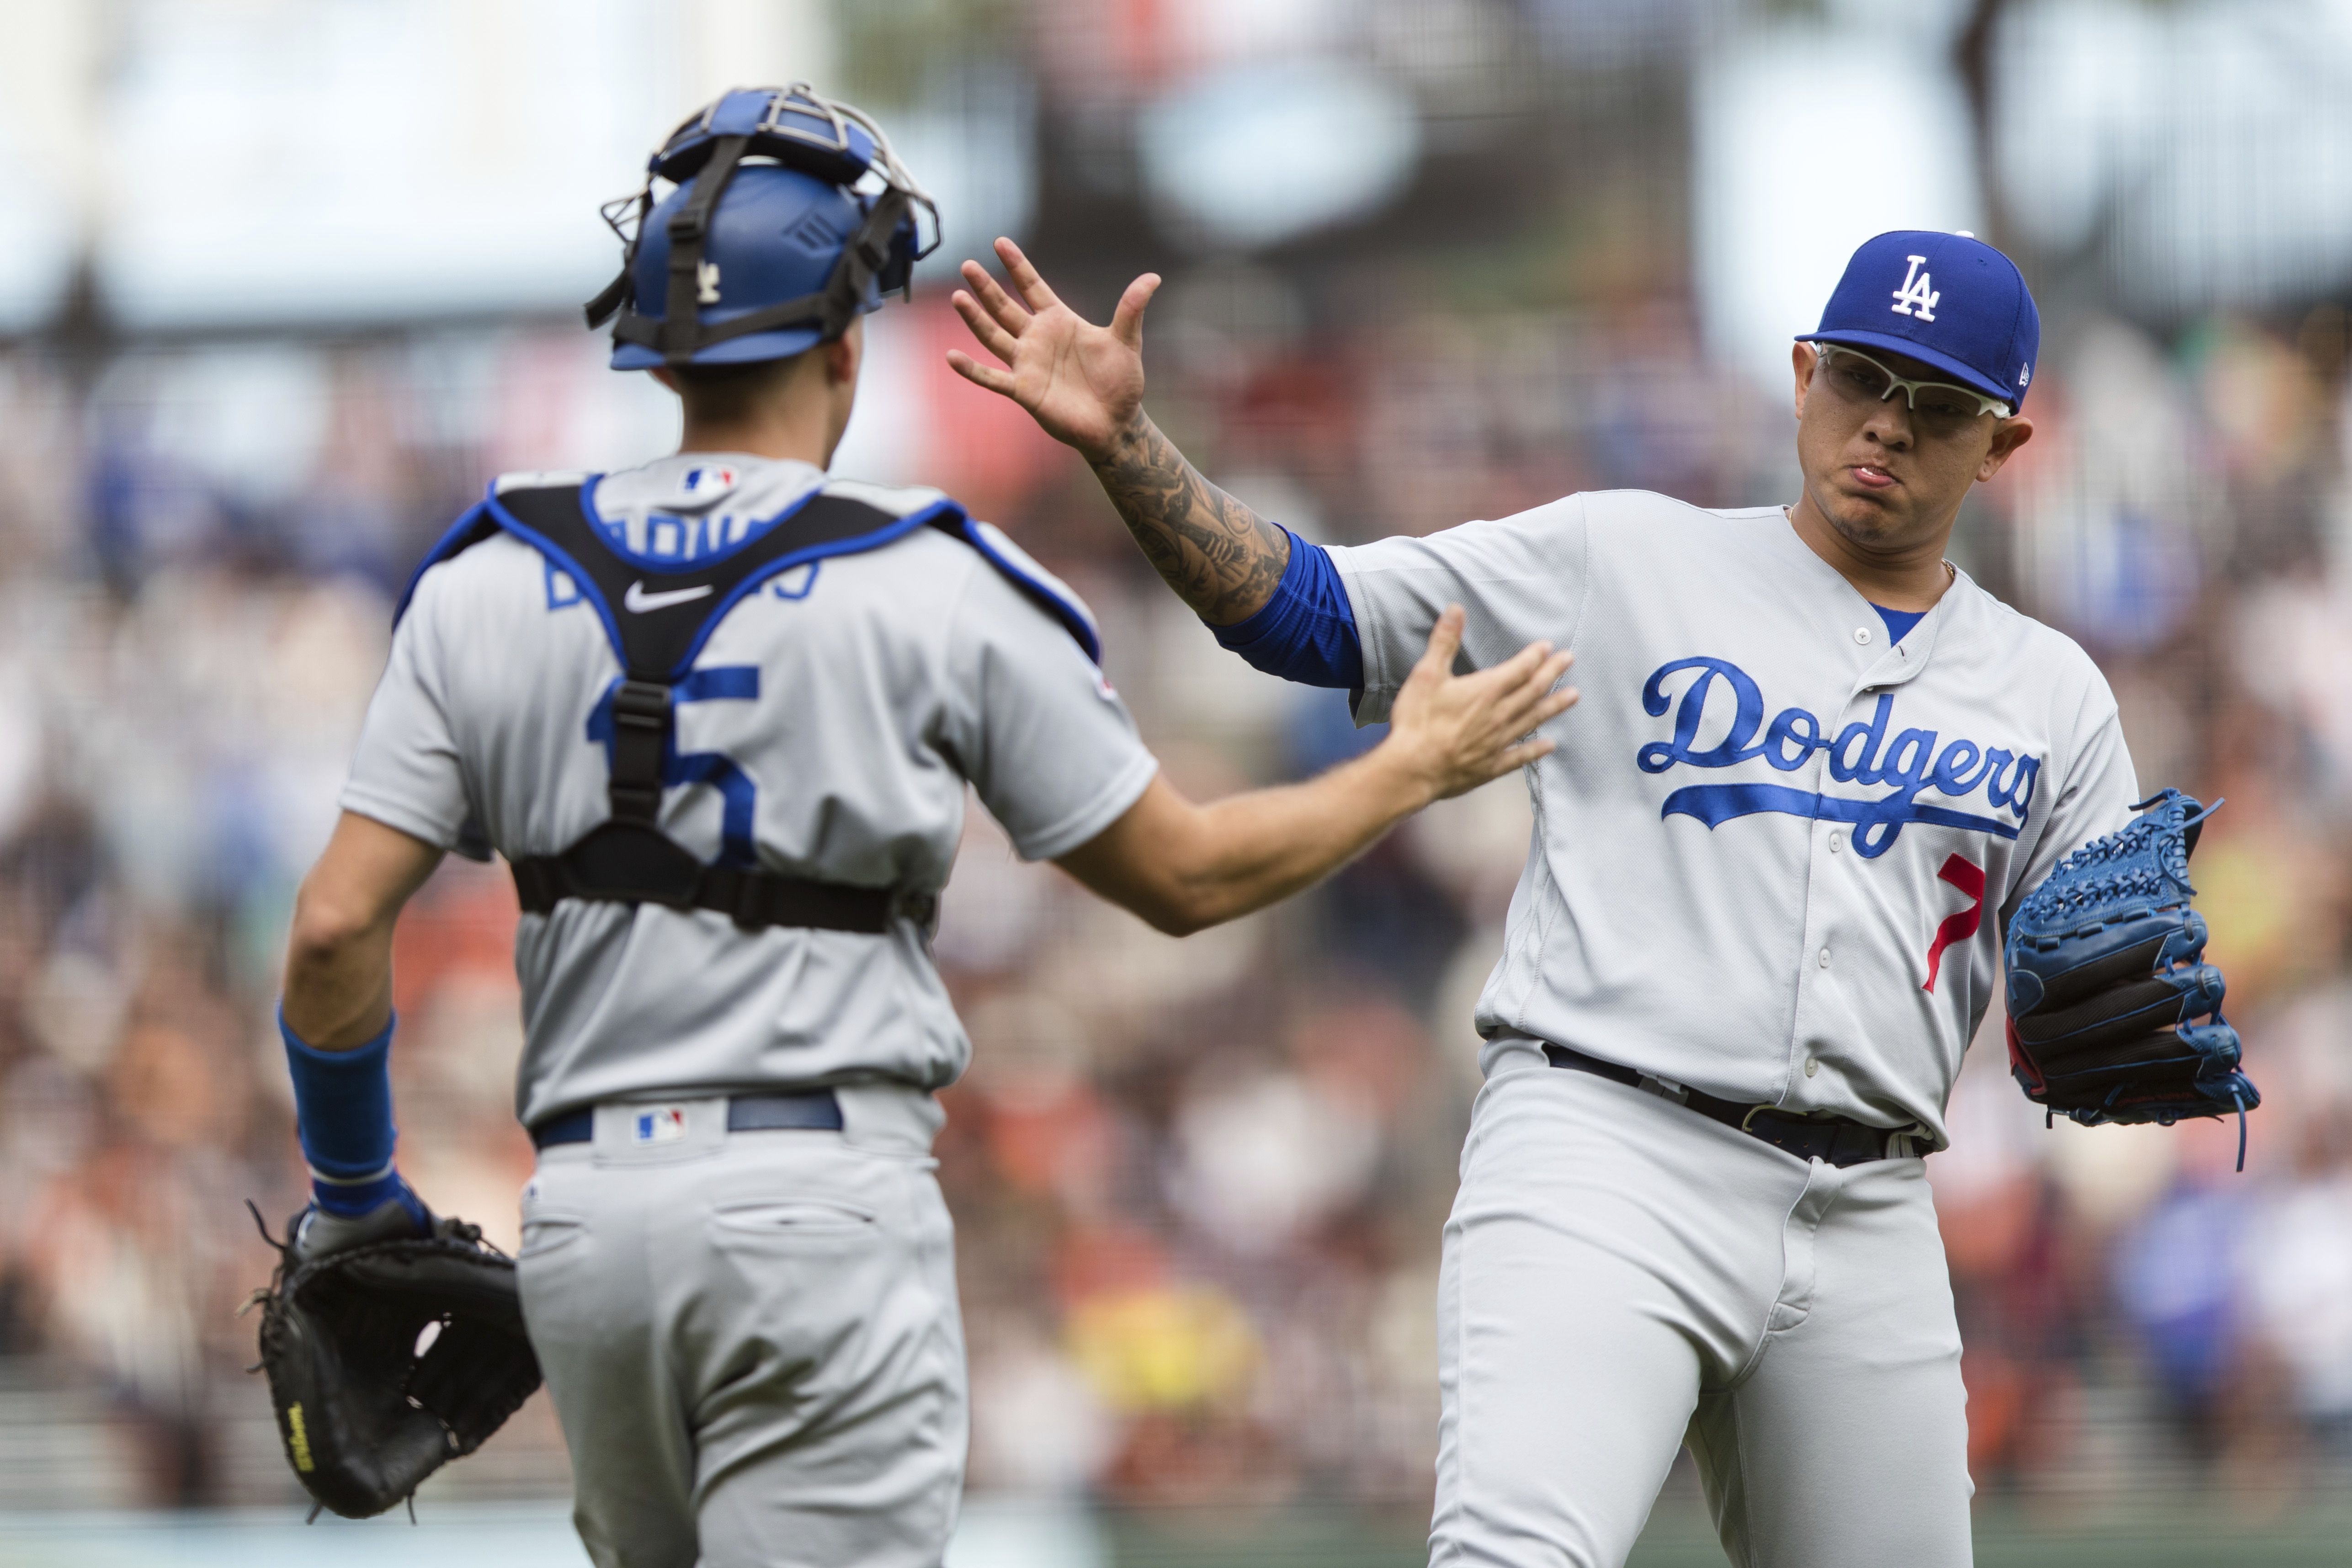 Tiebreakers have been perilous for Dodgers